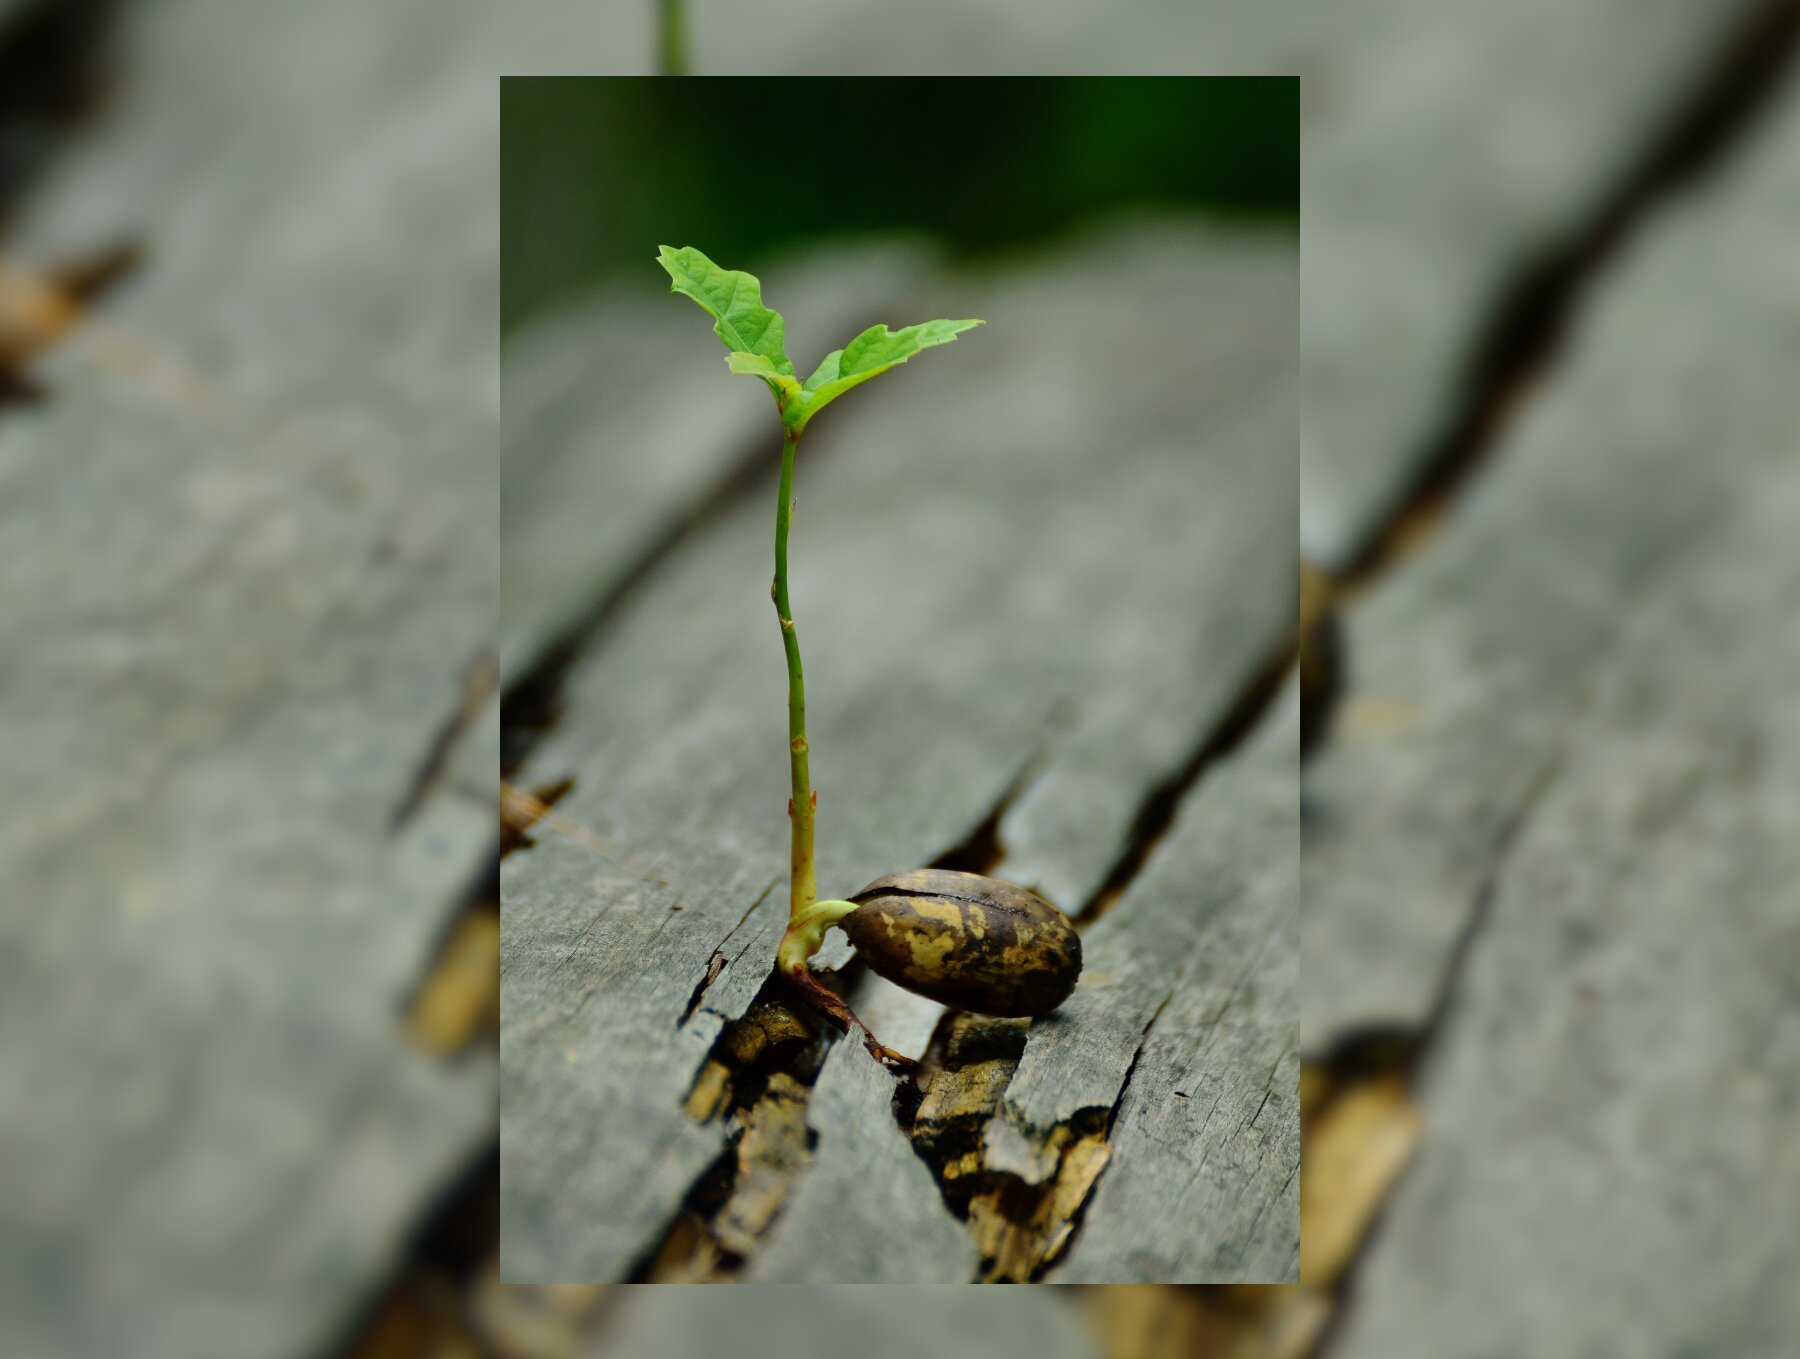 Zdjęcie przedstawia małą roślinę, która wyrasta ze szpary drewnianej deski.